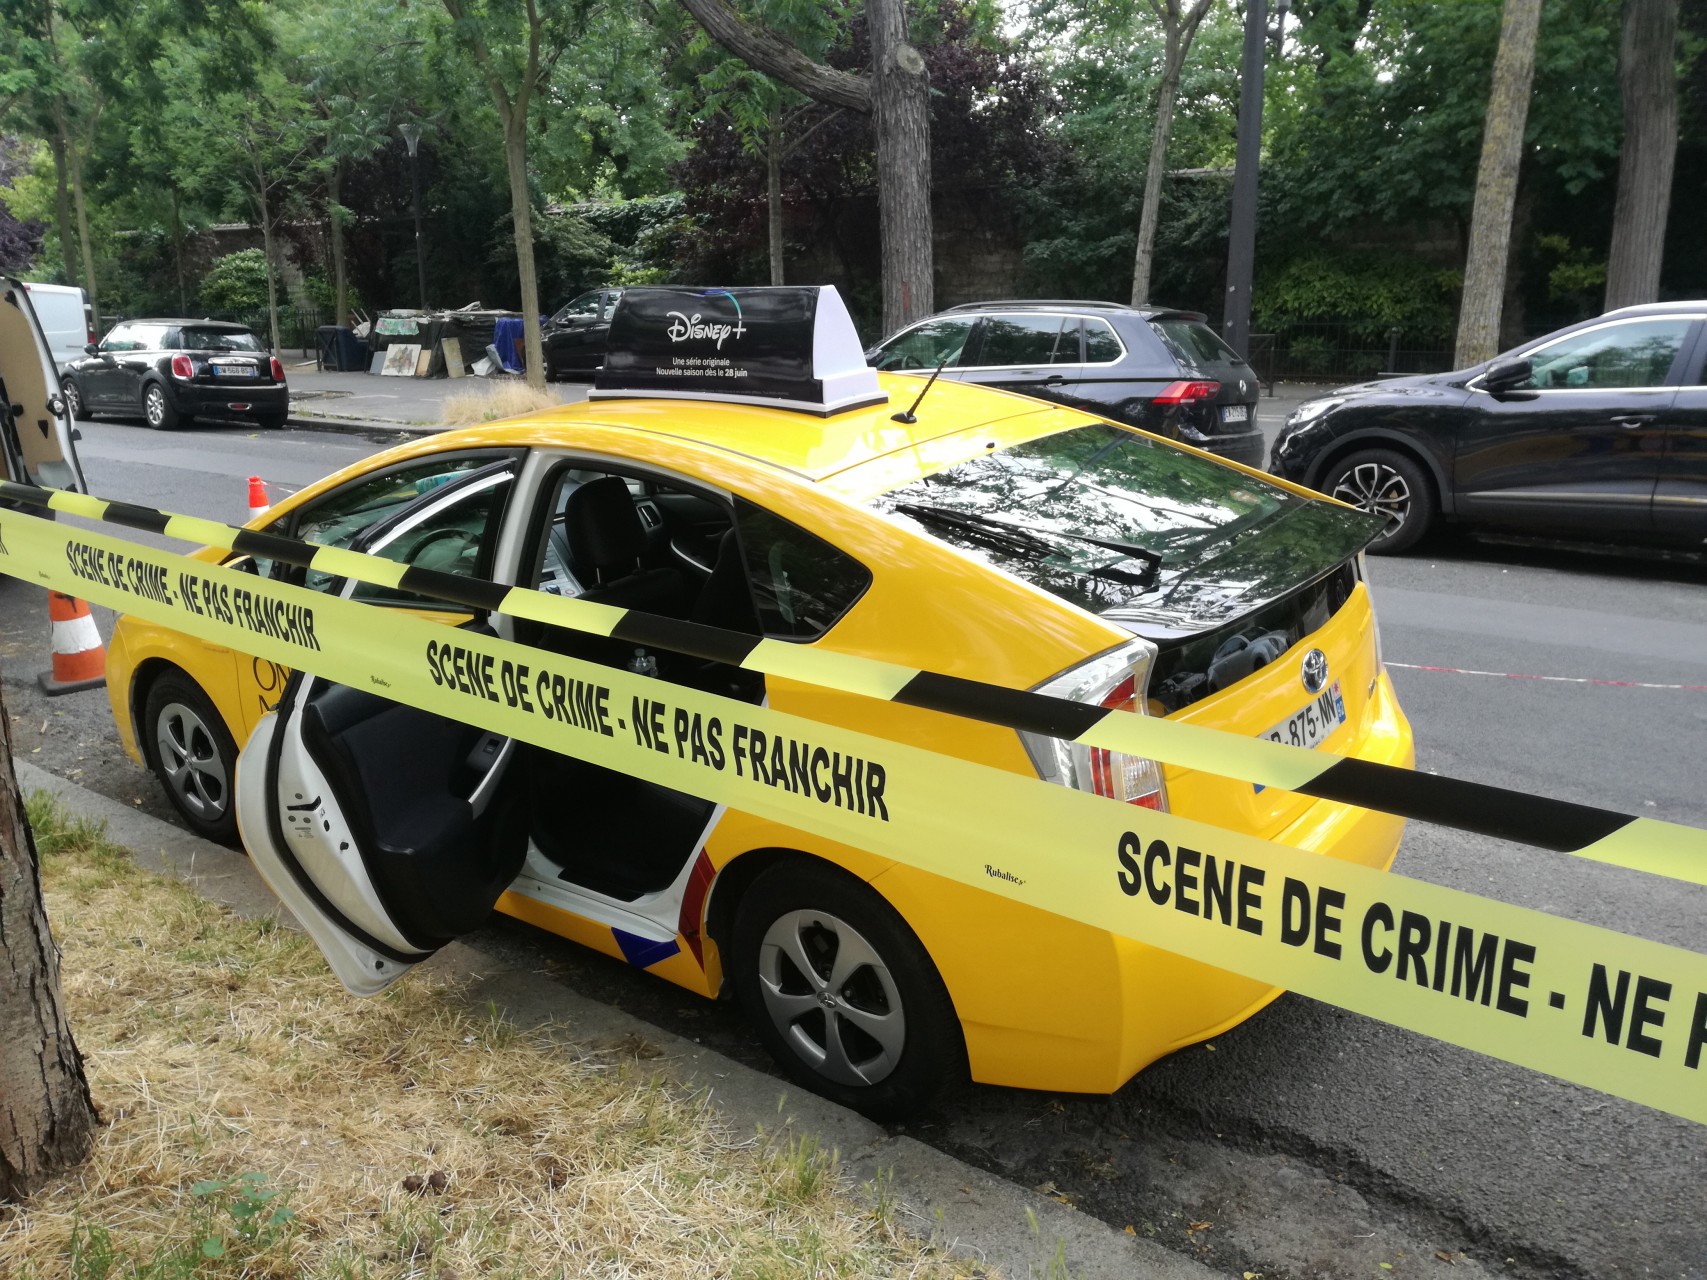 Taxi jaune aux couleurs de Disney + et bandeau "Scène de crime - Ne pas franchir"